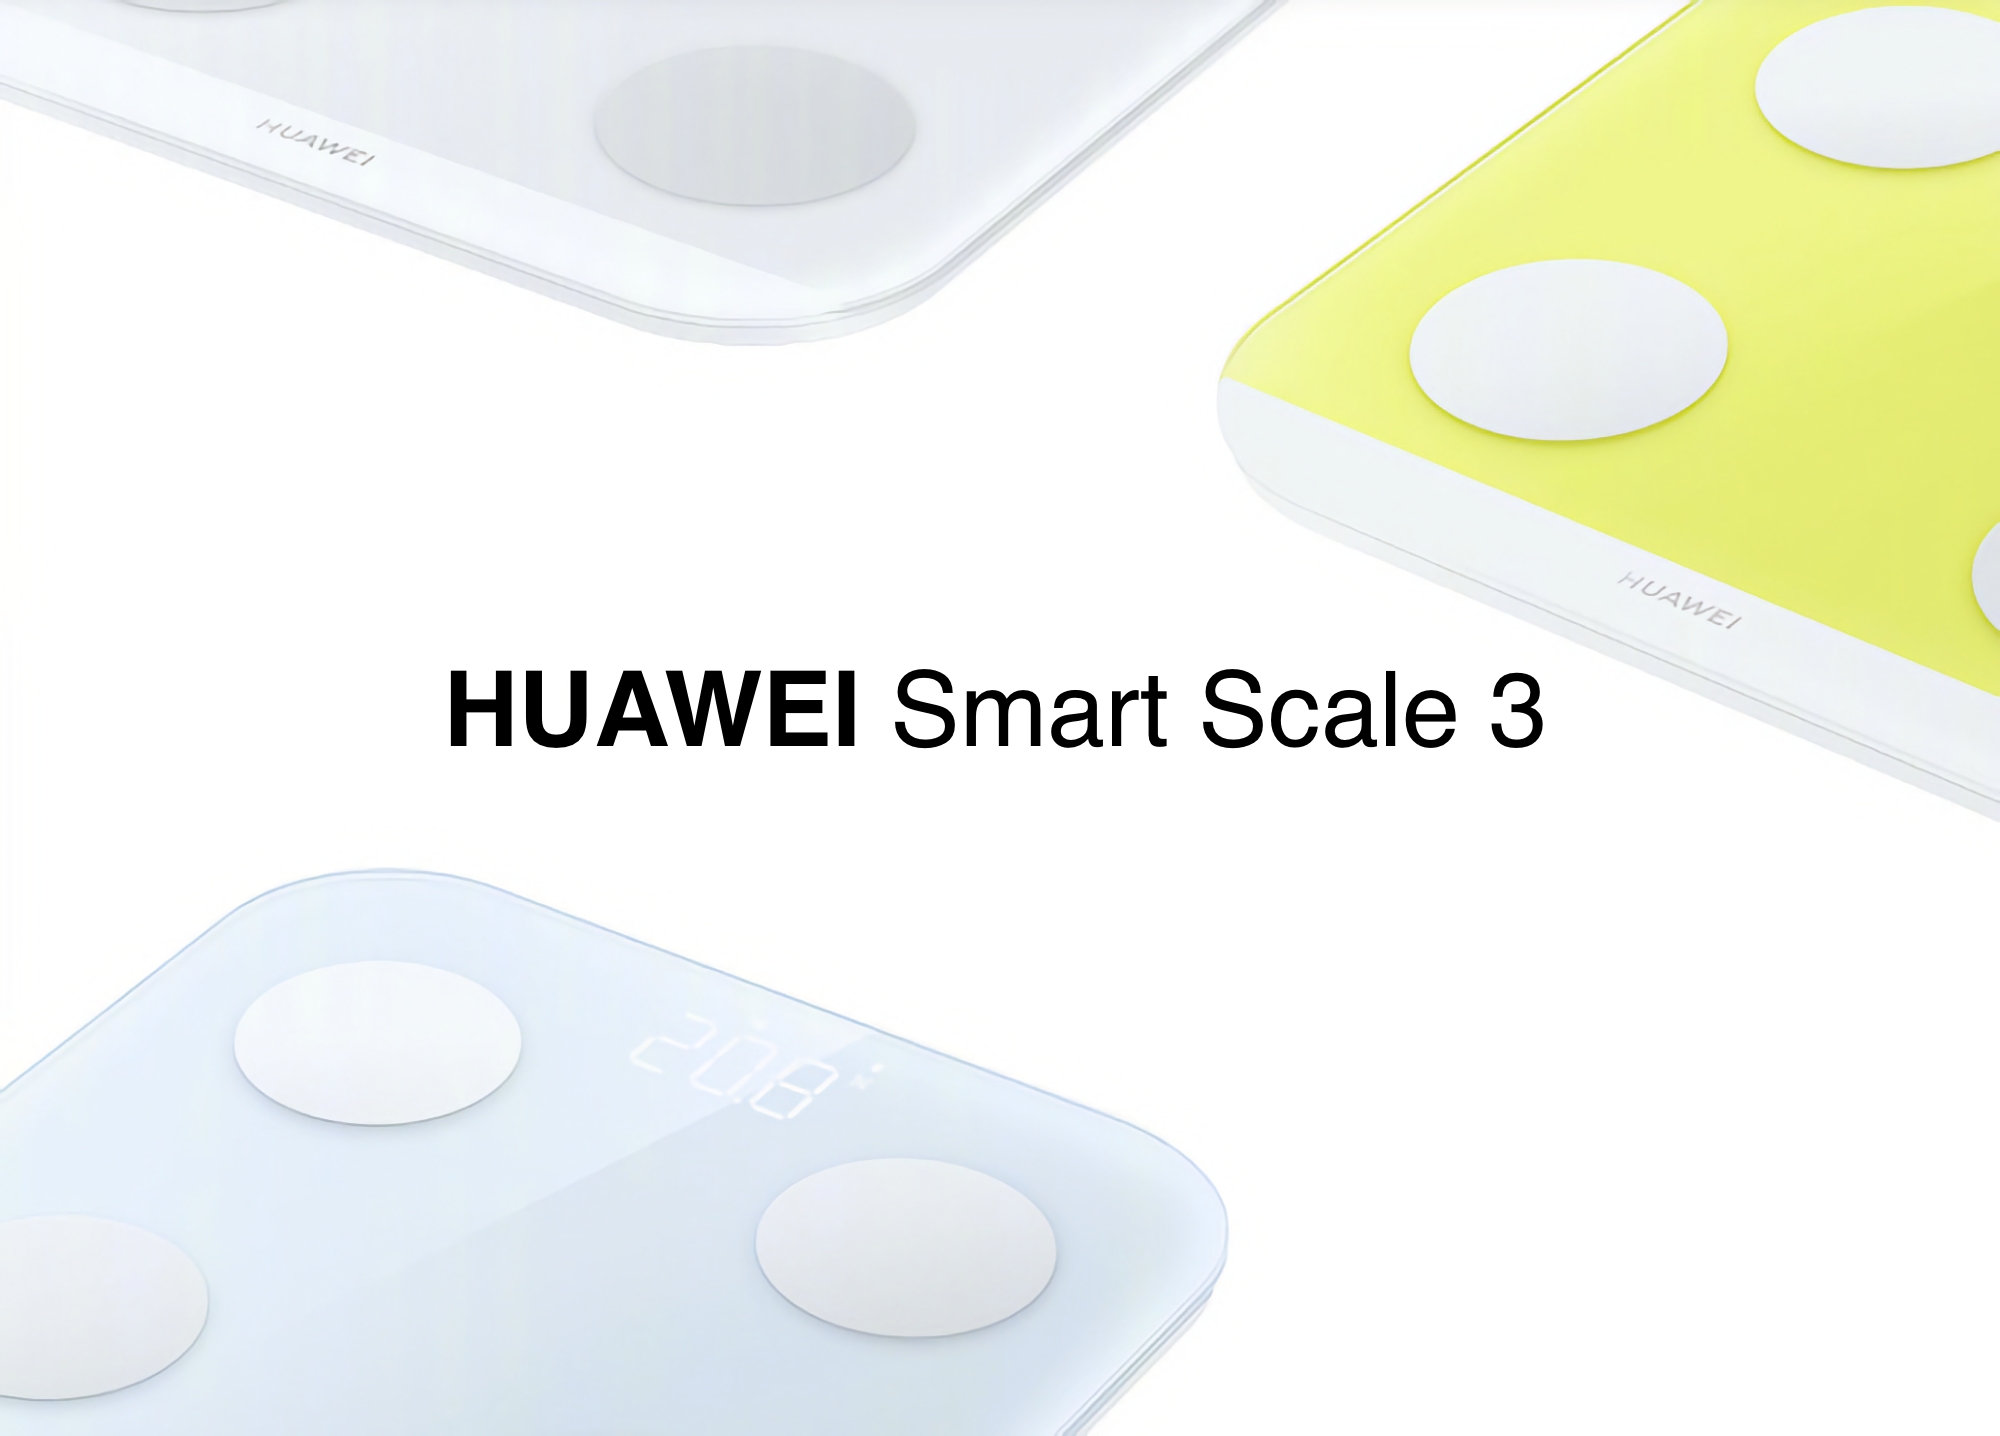 Huawei presentó una versión Bluetooth de la Smart Scale 3, el precio es menos de $ 20